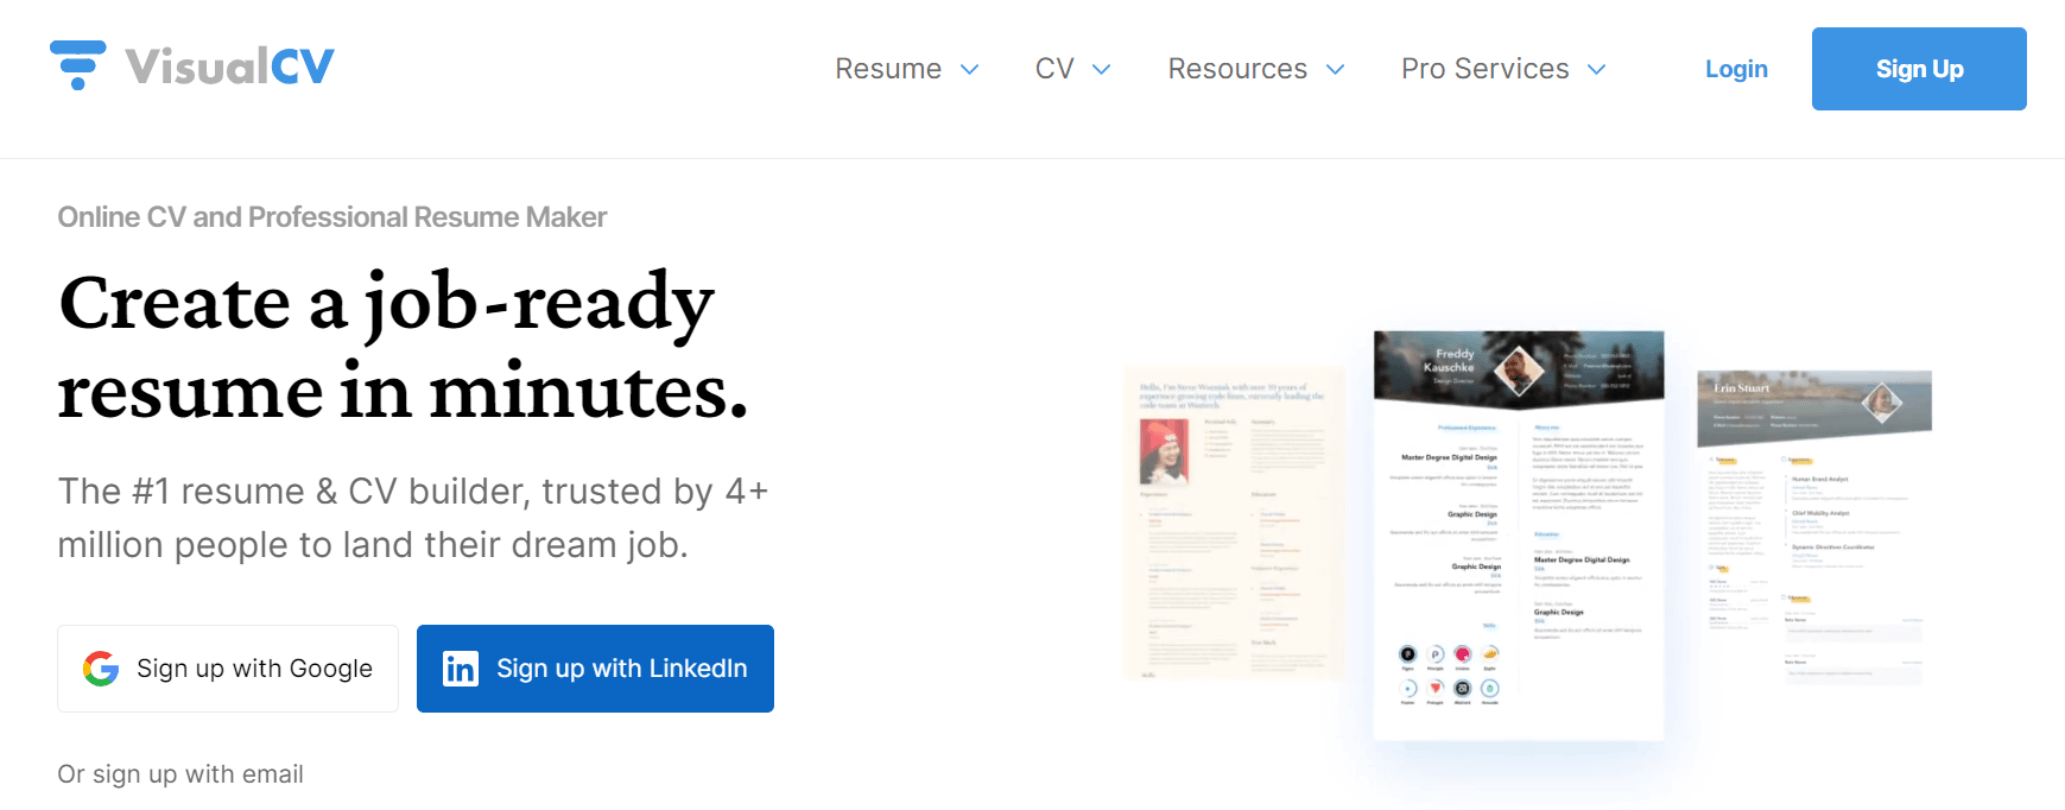 VisualCV Resume & CV Builder icon